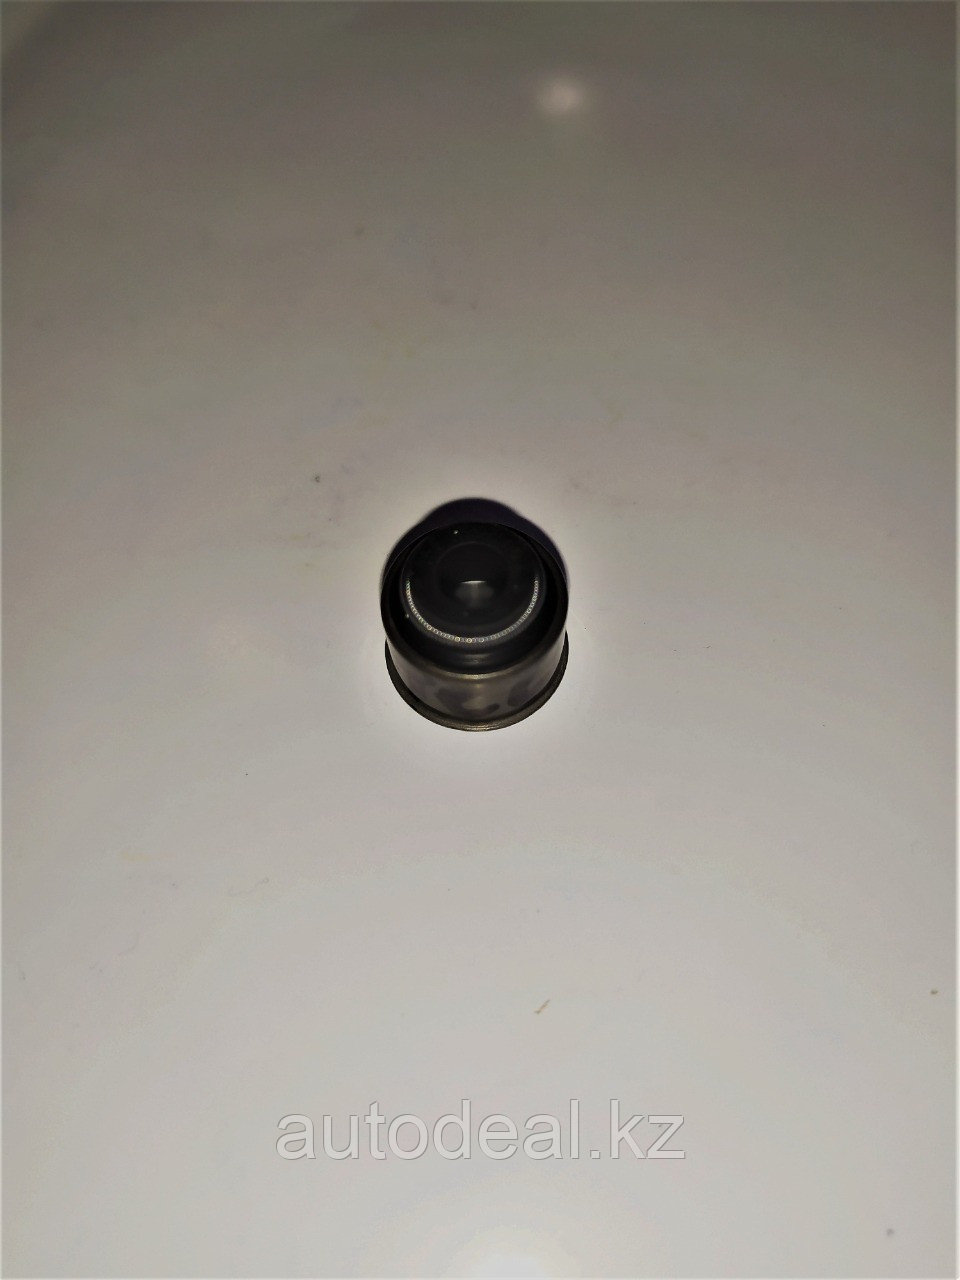 Колпачок маслосьемный впускной CORTECO Geely EC7/SC7 / Inlet valve stem seals